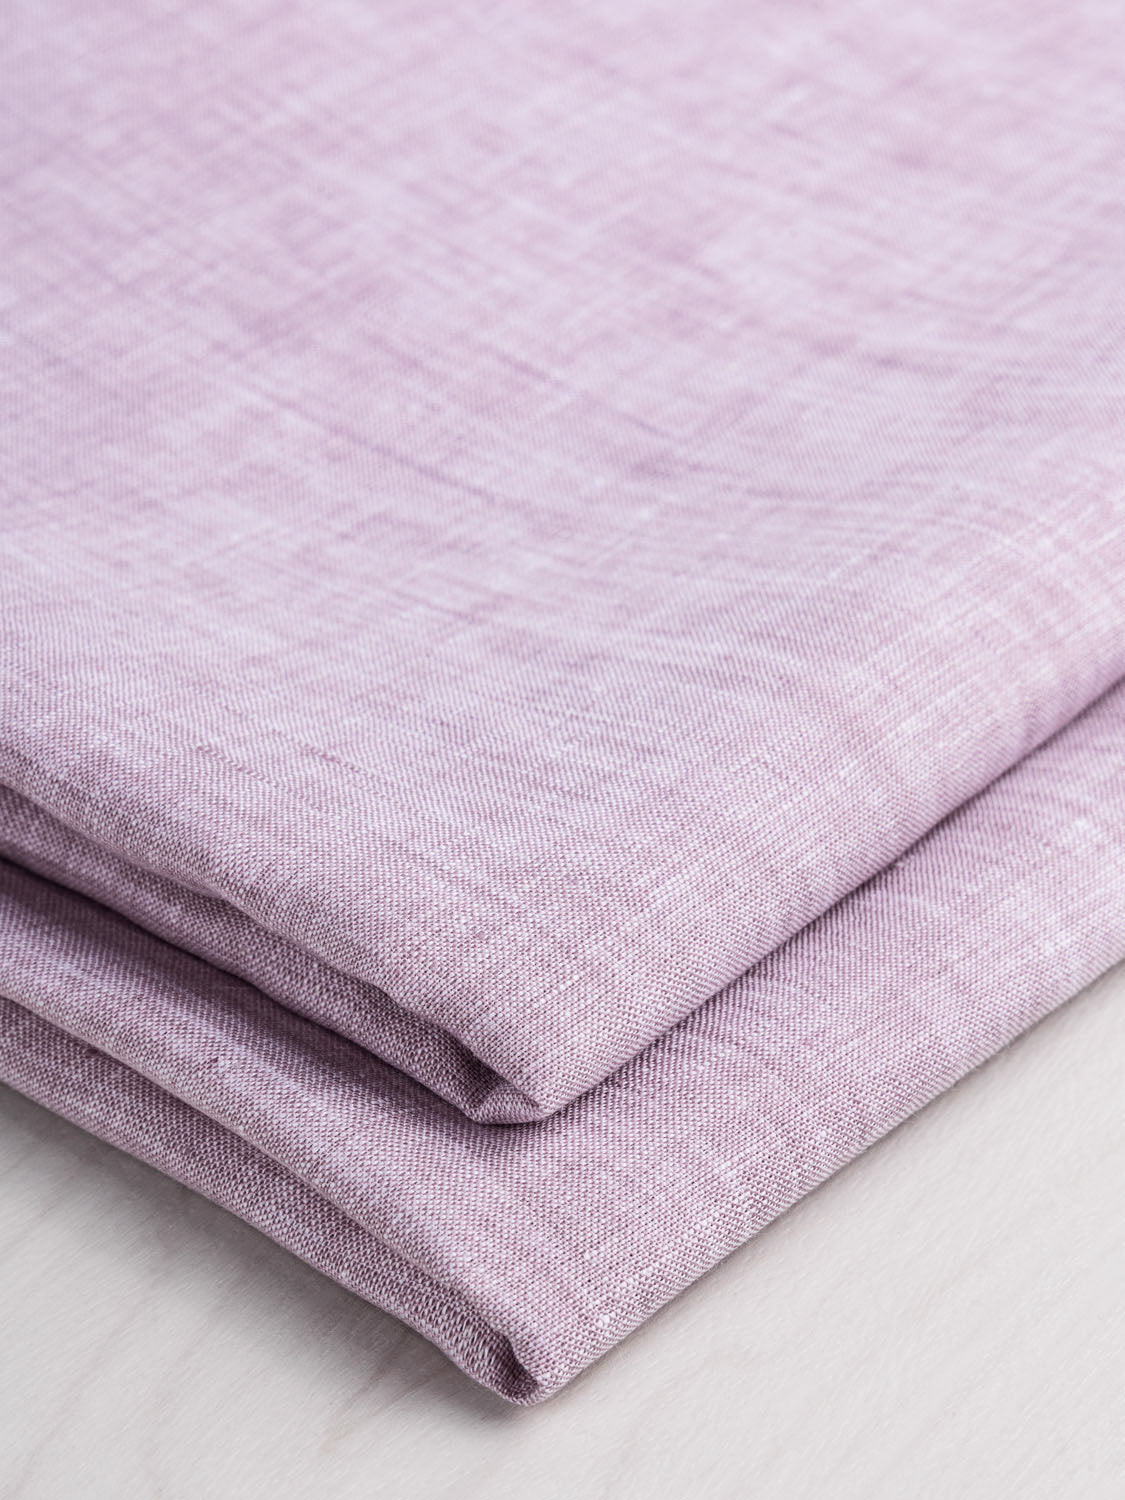 Yarn Dyed Chambray Linen - Lilac | Core Fabrics